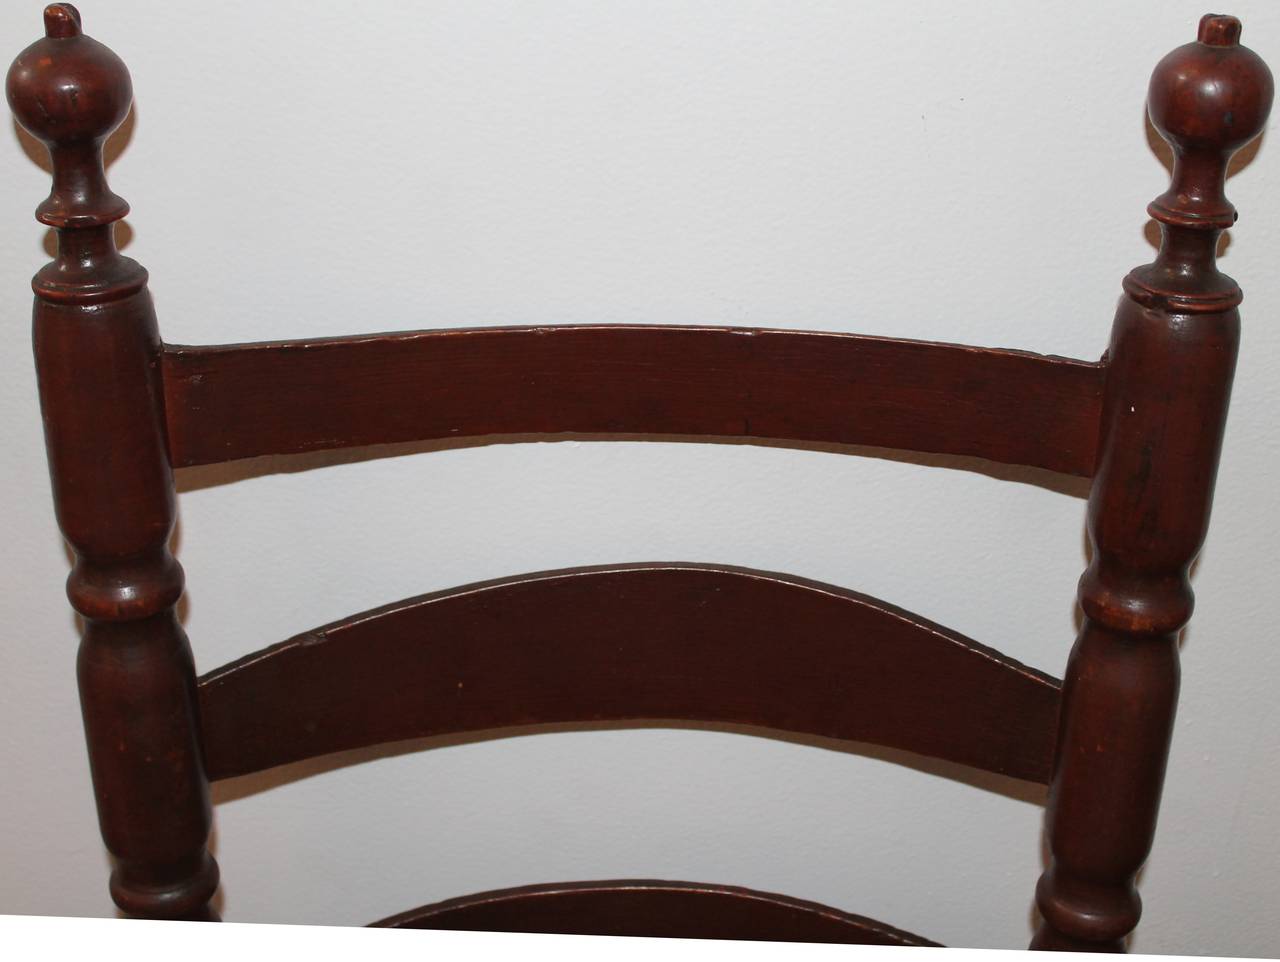 Exquisiter, original bemalter Kiefernsessel aus dem 18. Jahrhundert mit Leiterlehne und einem maßgefertigten blau-weißen Leinenkissen. Dieser Sessel hat eine tolle Patina und eine unberührte Originalfarbe.

Mit Leinenkissen beträgt die Sitzhöhe